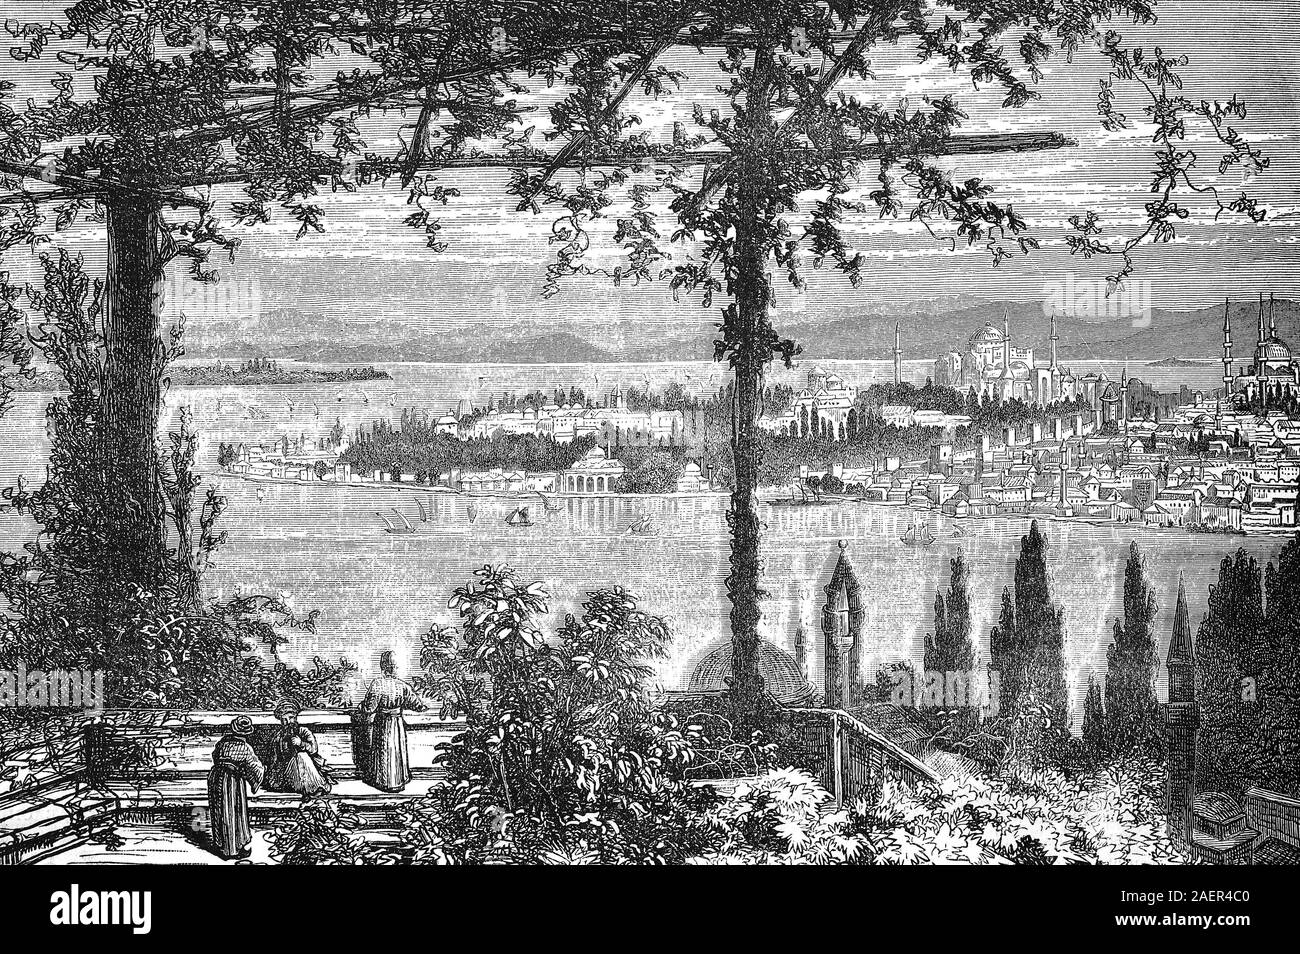 Konstantinopel und heute Istanbul/Konstantinopel, heute Istanbul, Türkei, Reproduktion eines original 19. Jahrhundert drucken/Reproduktion von einems Originaldruck aus dem 19. Jahrhundert Stockfoto